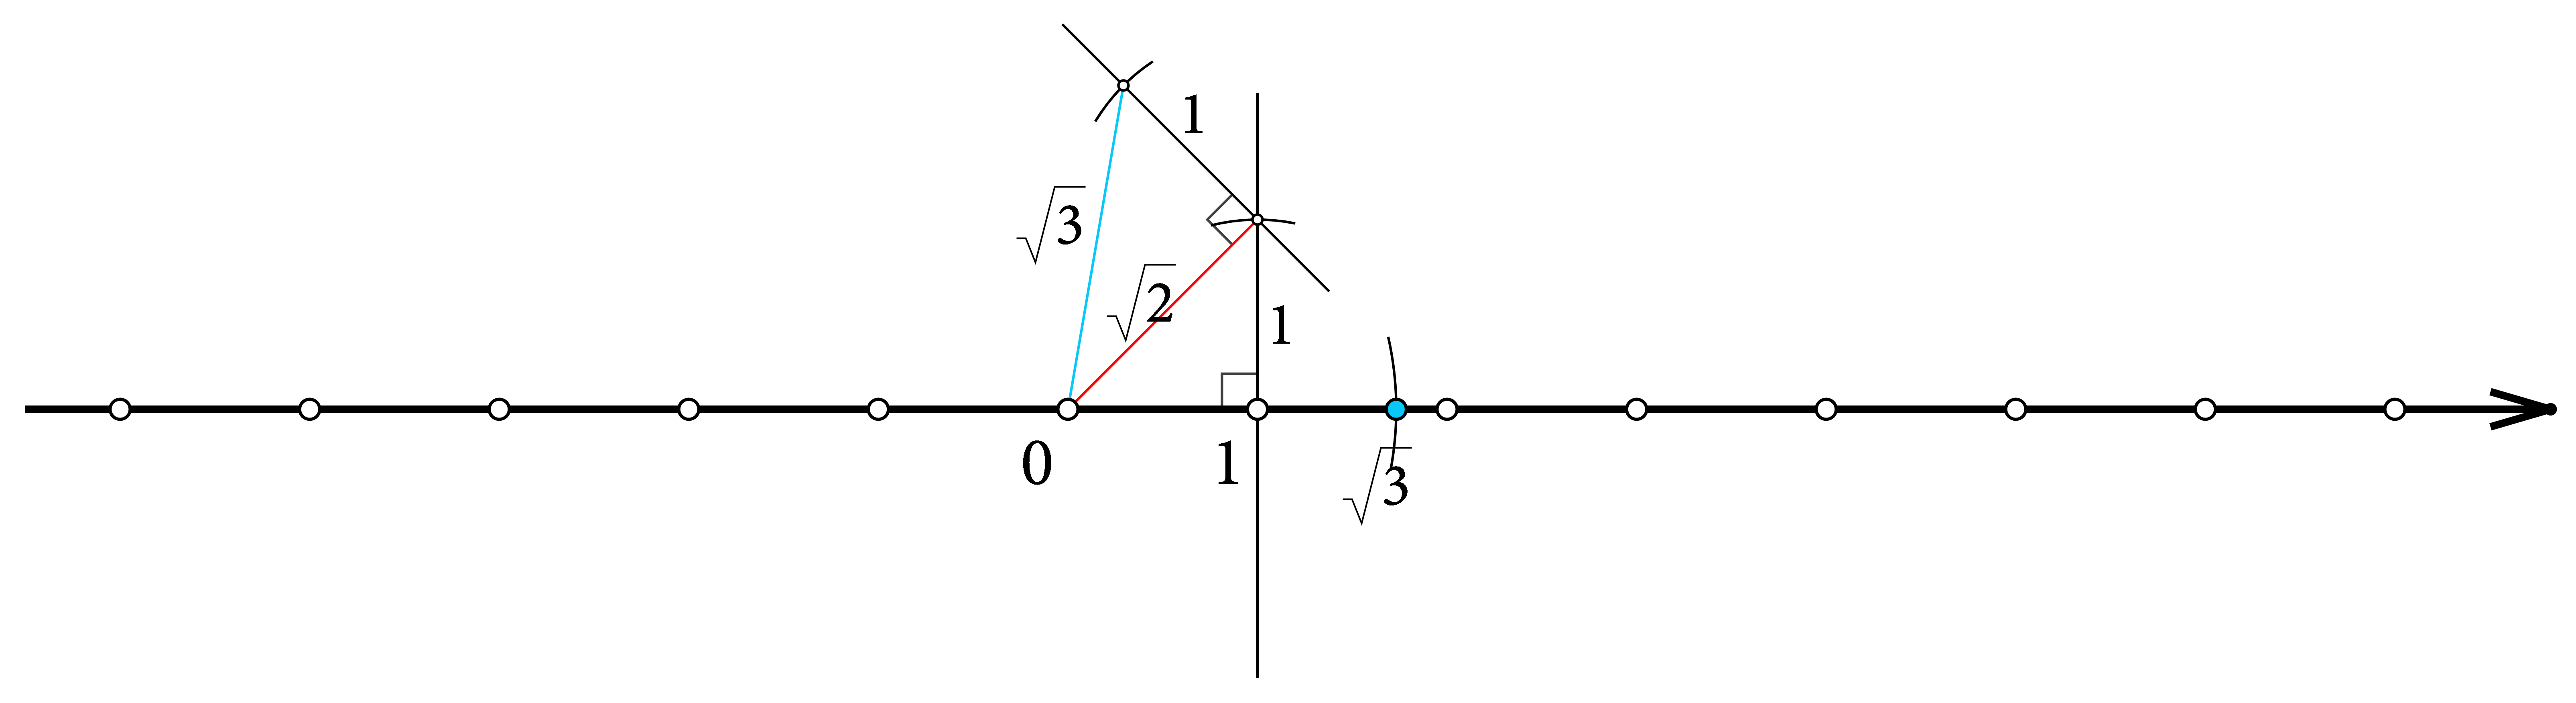 Slika prikazuje konstrukciju drugog korijena iz 3 pomoću pravokutnog trokuta sa katetom duljine 1 jedinice te drugom katetom duljine korijen iz dva.